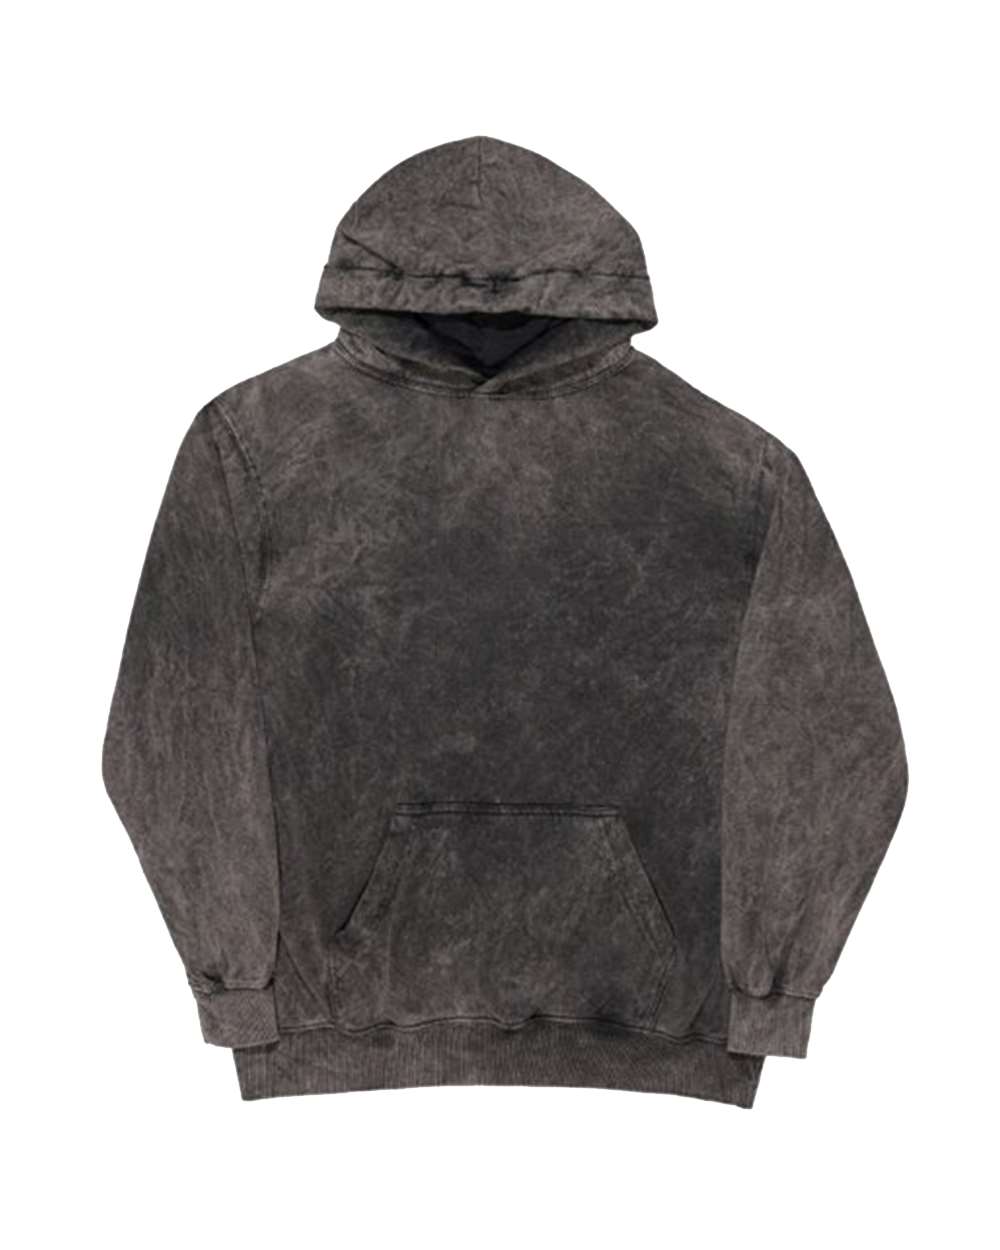 Dyenomite 854BMW - Youth Premium Fleece Mineral Wash Hooded Sweatshirt